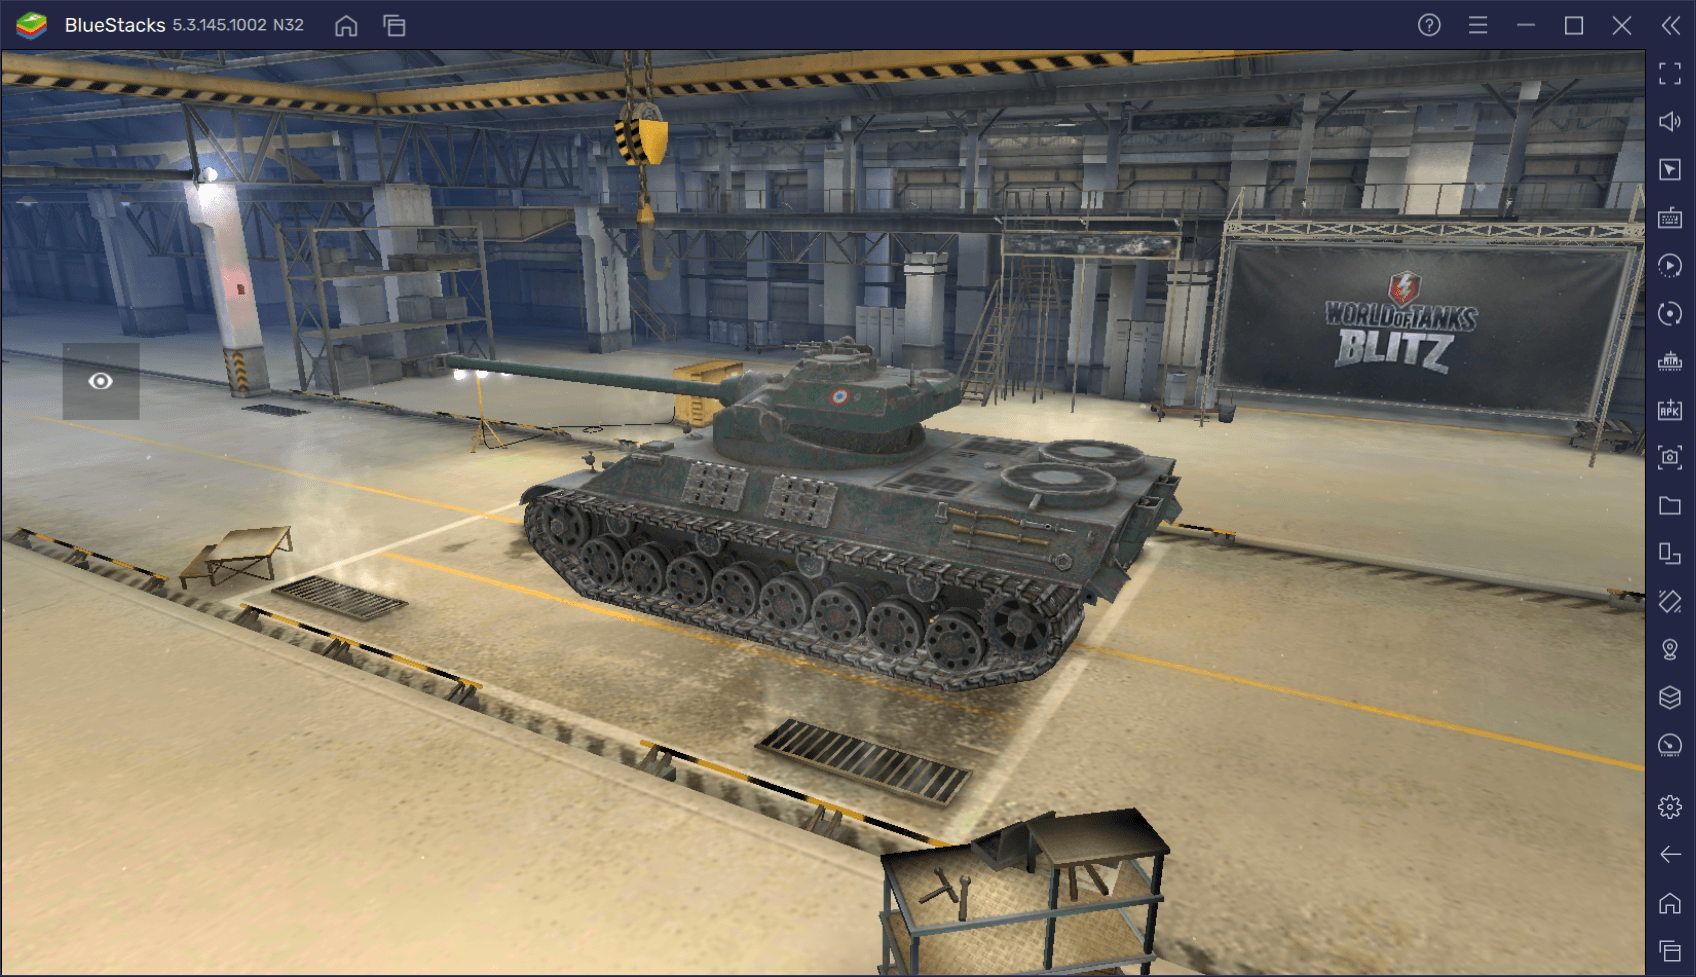 Гайд по премиумному танку Somua SM в World of Tanks Blitz. Обзор характеристик, преимуществ и тактик игры